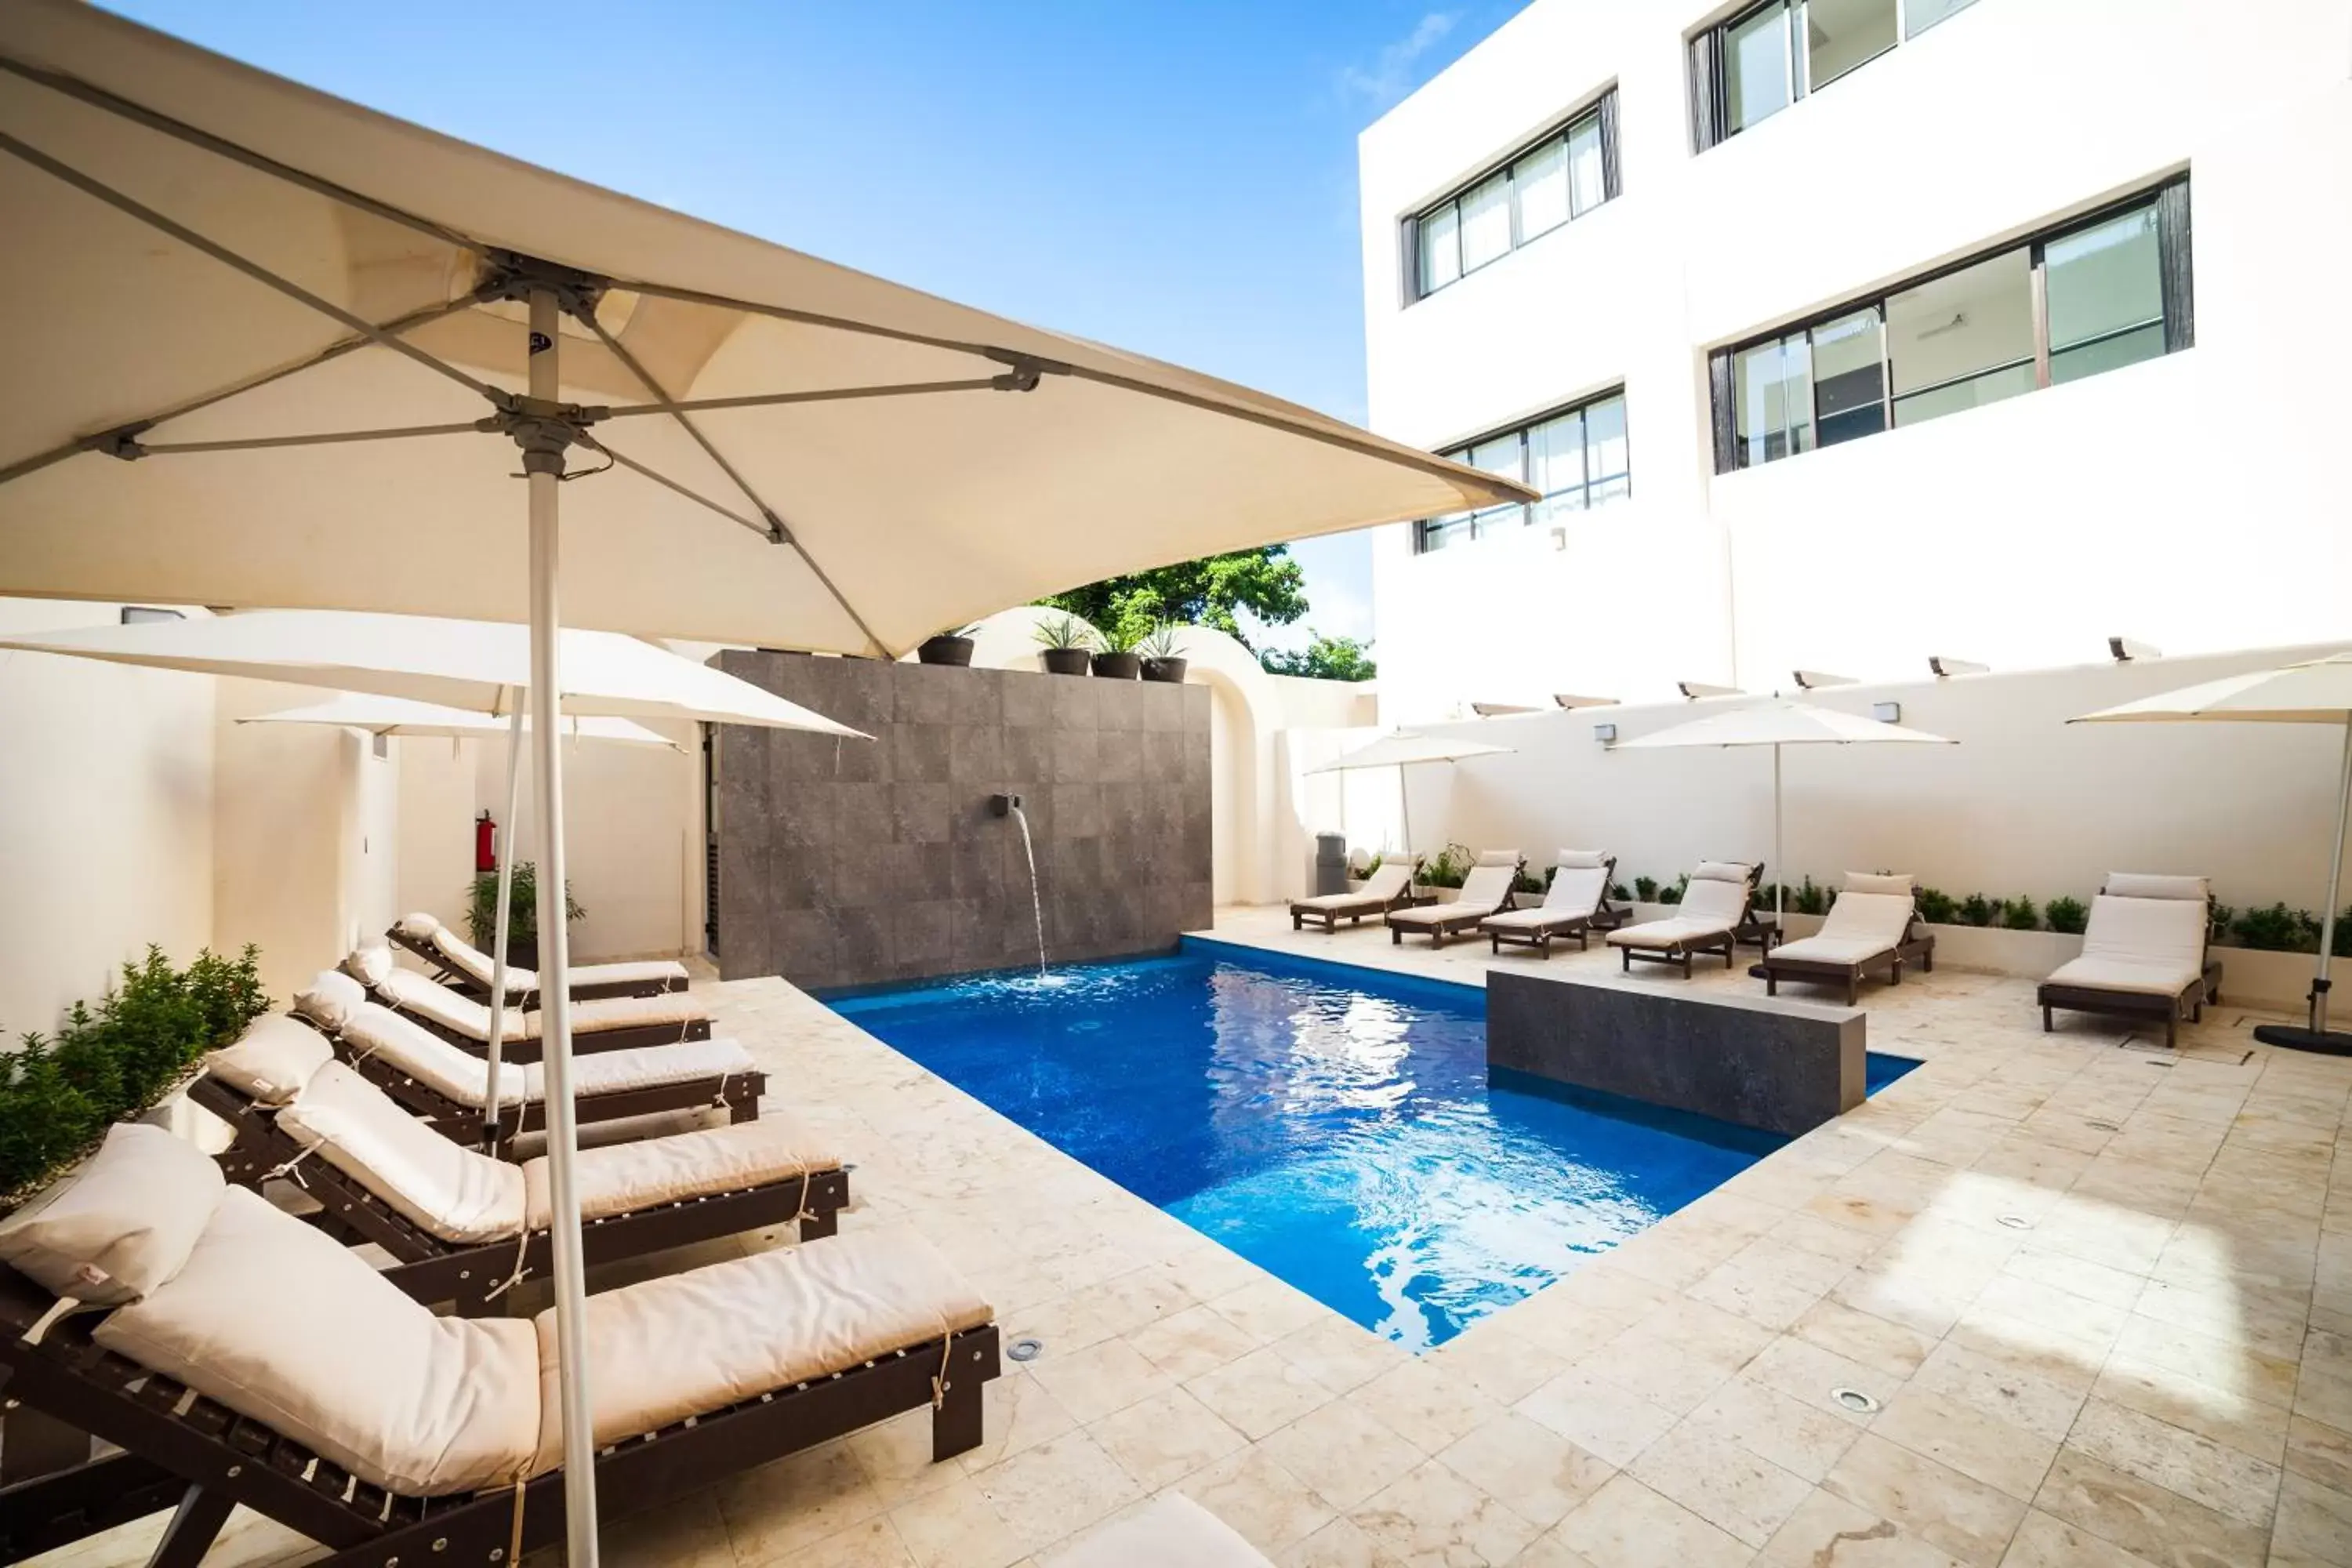 Pool view in Aspira Hotel Playa del Carmen